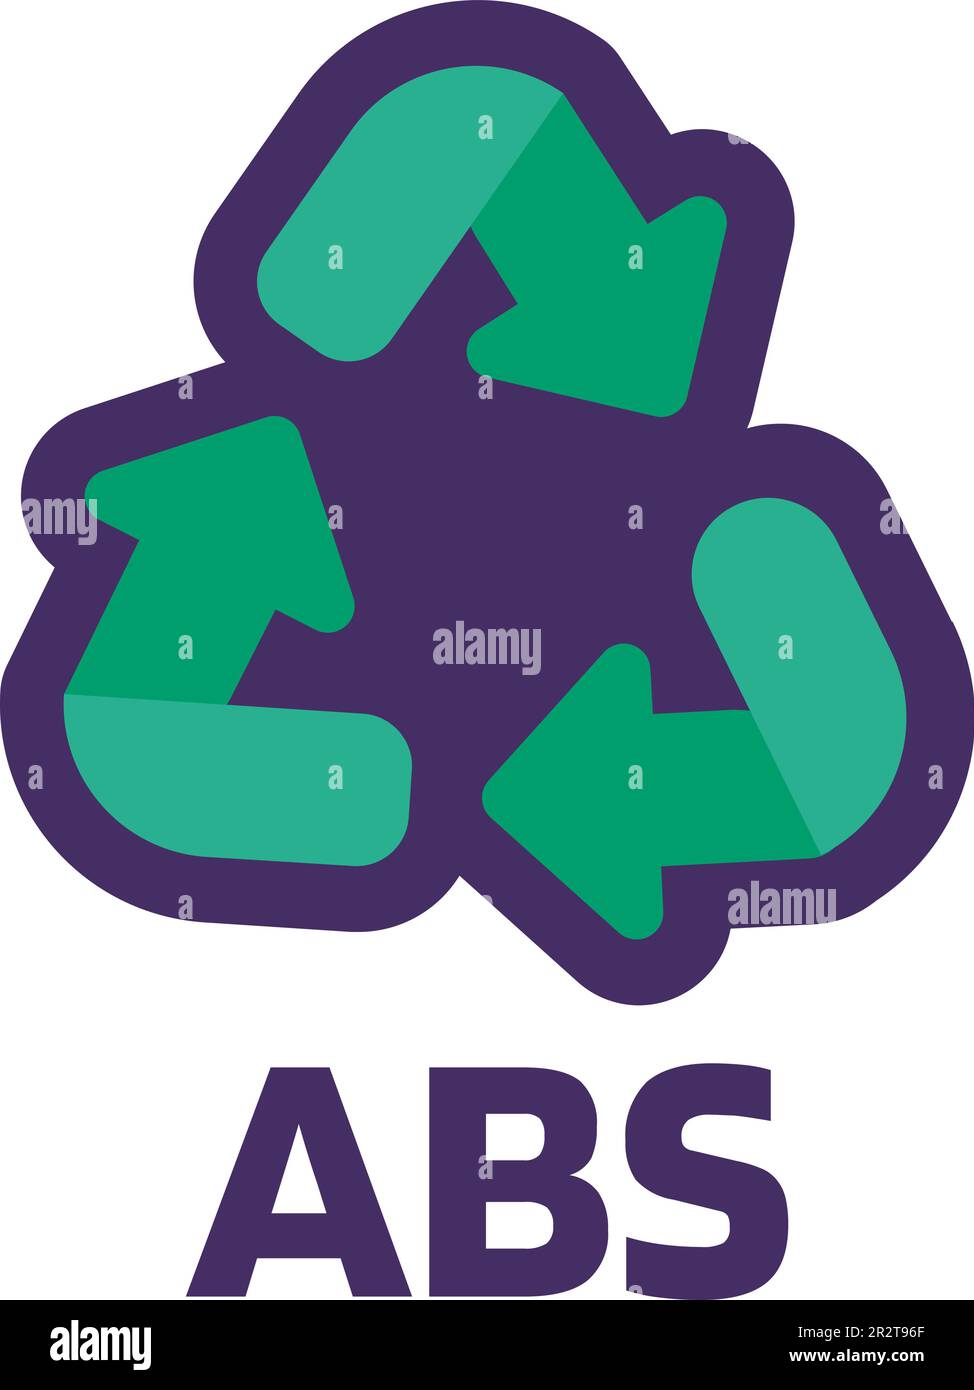 Notare il simbolo ABS per la marcatura dei prodotti industriali. Codice di riciclaggio per plastica, carta, metalli. Informare il consumatore sulle proprietà dell'imballaggio e sui prodotti chimici Illustrazione Vettoriale